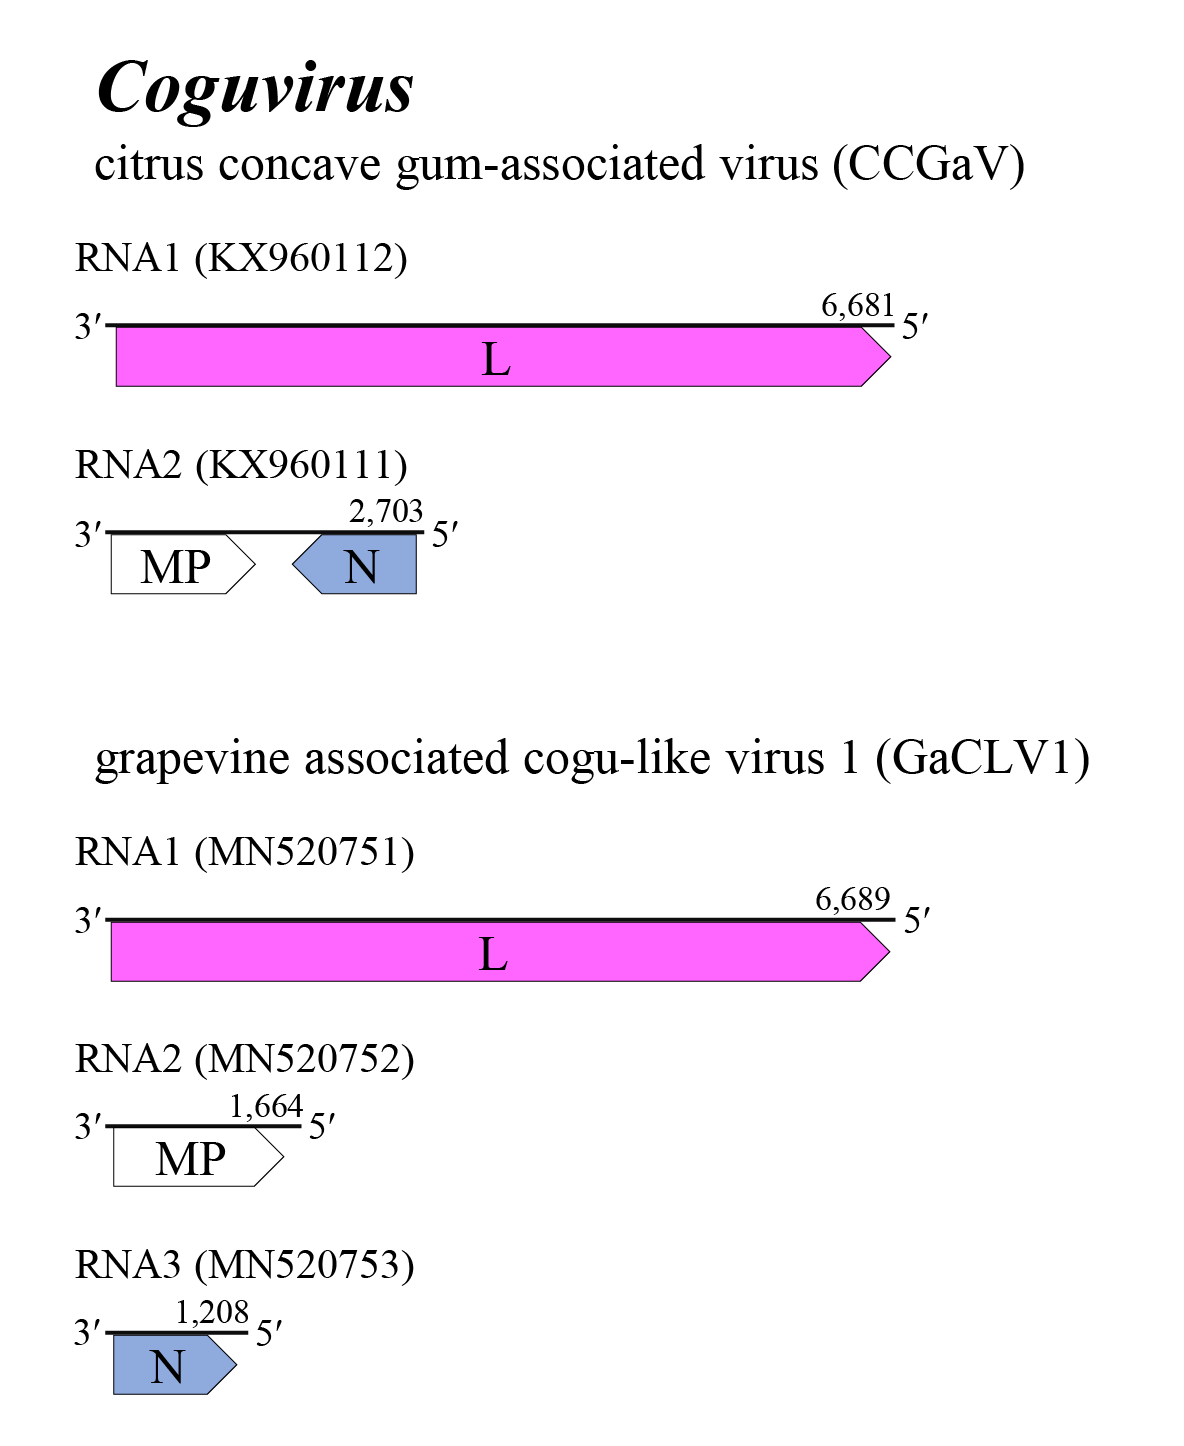 Coguvirus genome